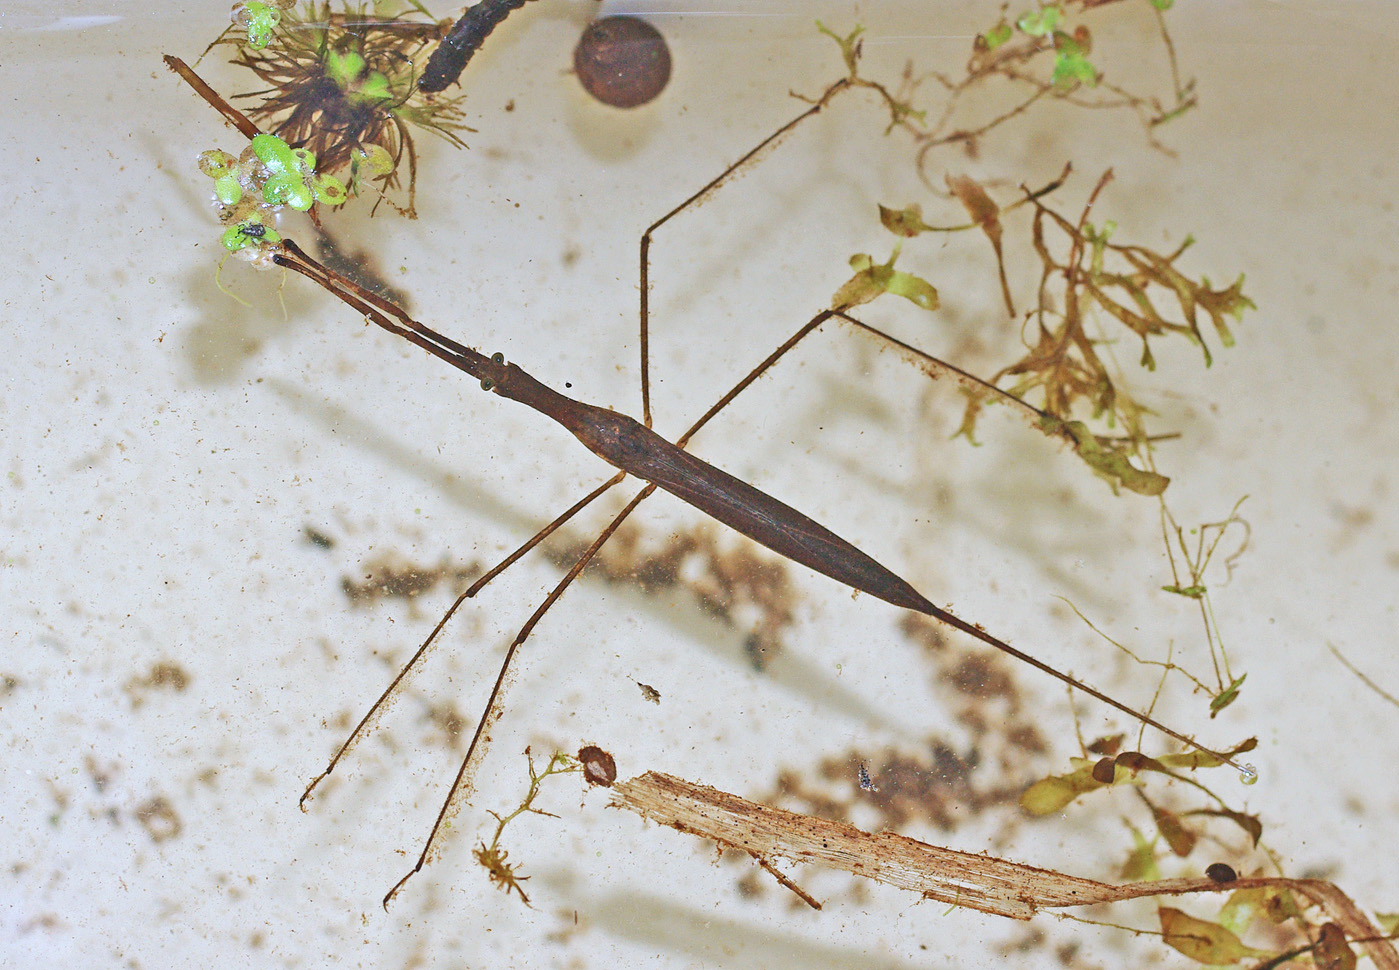 Wetland Homage IV – Water Scorpions